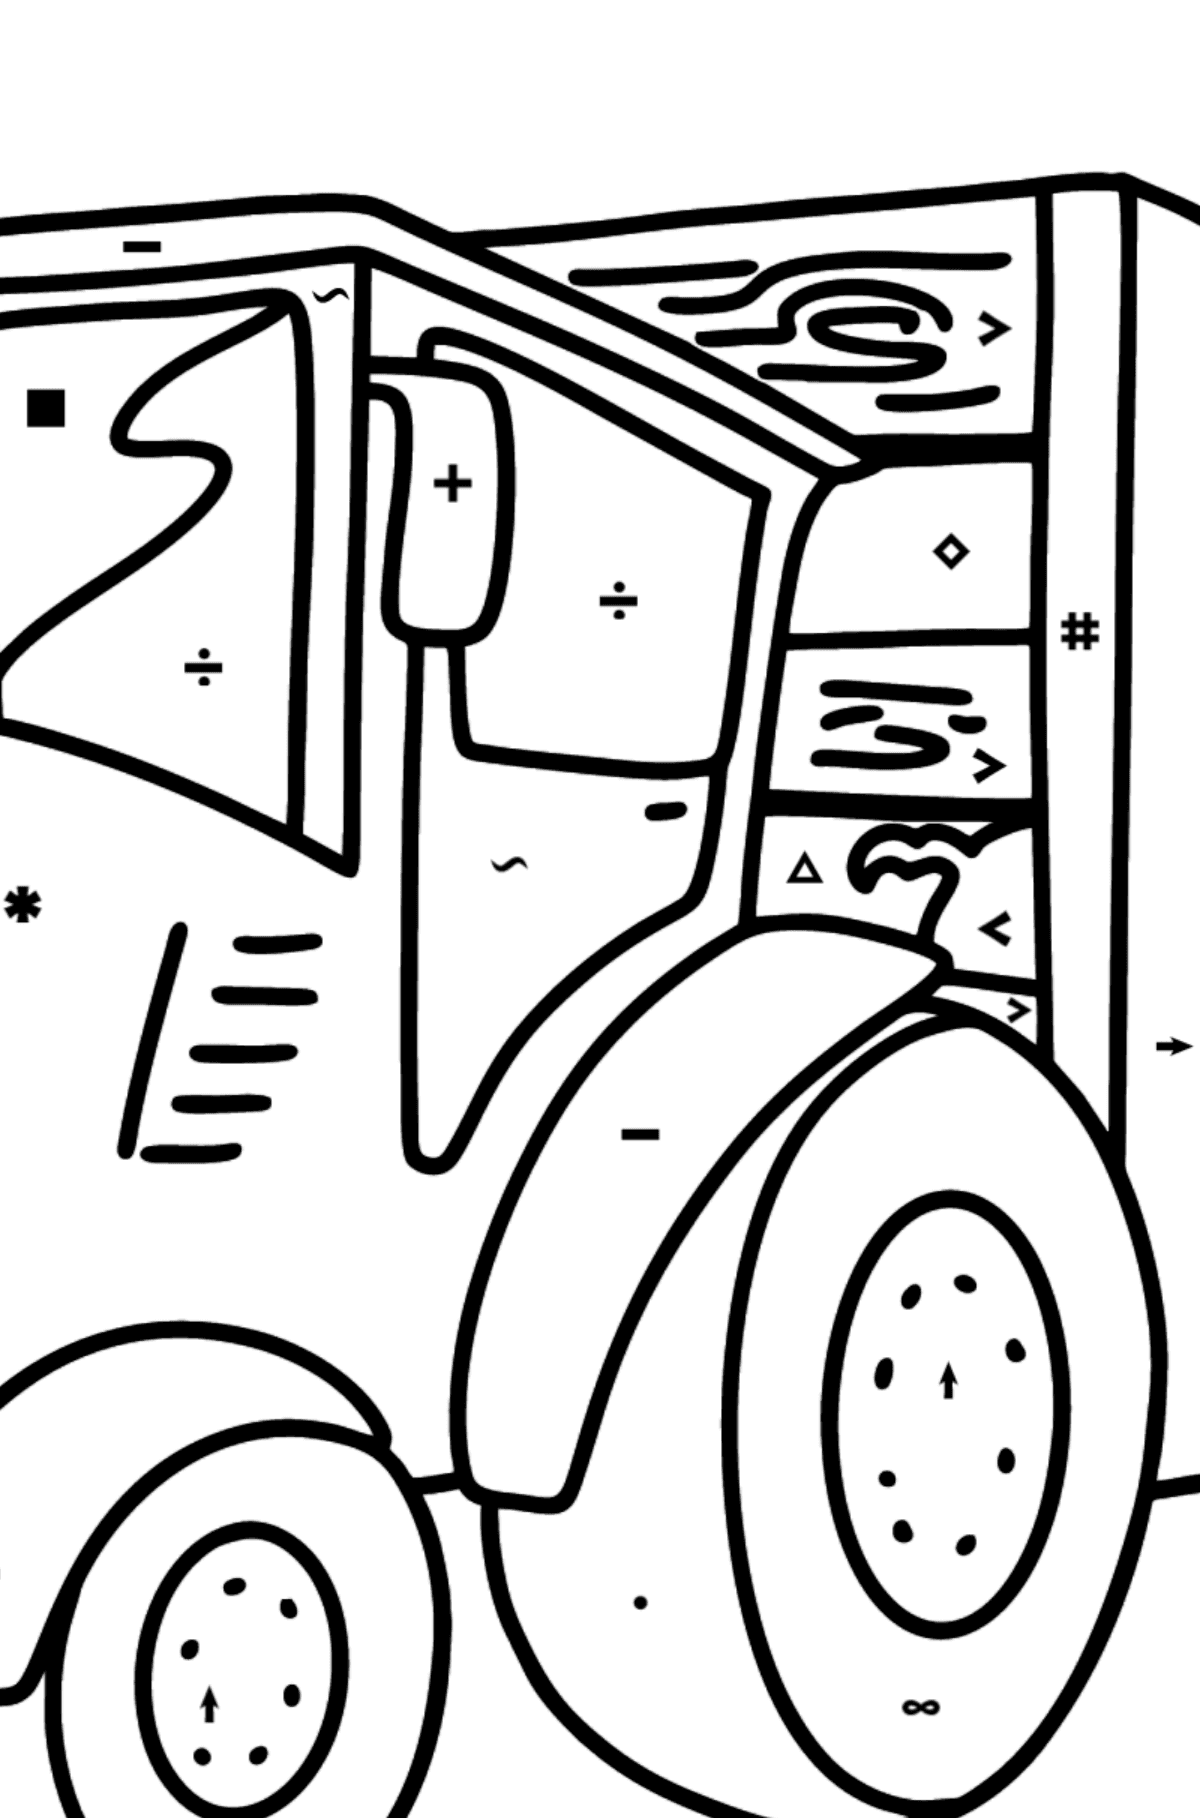 Desenho para colorir Tractor with Pig Trailer - Colorir por Símbolos para Crianças